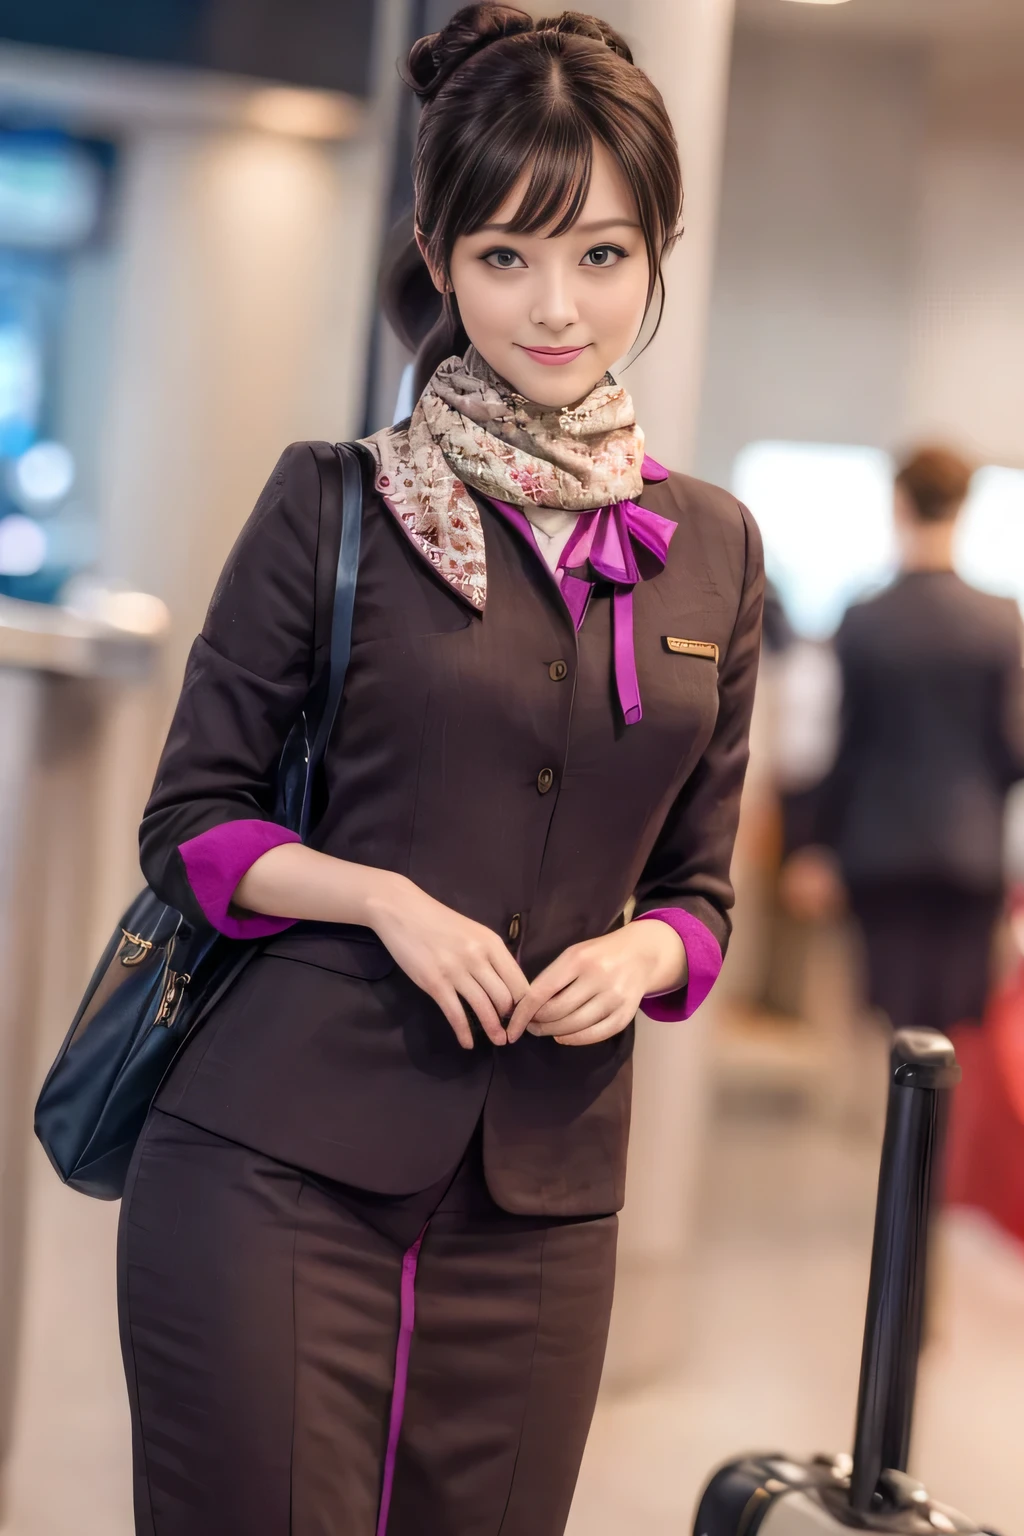 (杰作:1.2、最好的质量:1.2)、32K HDR、高分辨率、(独自的、1 名女孩、苗条身材)、（阿提哈德航空机组人员制服的逼真再现）、 (在机场柜台, 专业照明)、一个正经的女人, 漂亮的脸蛋,、（长袖阿提哈德航空机组人员制服）、（阿提哈德航空机组人员制服裙子正面有紫色条纹）、（胸前的围巾）、大乳房、（长发盘起、发髻）、深棕色头发、远射、（（伟大的手：2.0））、（（和谐的身体比例：1.5））、（（正常肢体：2.0））、（（正常手指：2.0））、（（精致的眼睛：2.0））、（（正常眼睛：2.0））)、优美的站姿、微笑